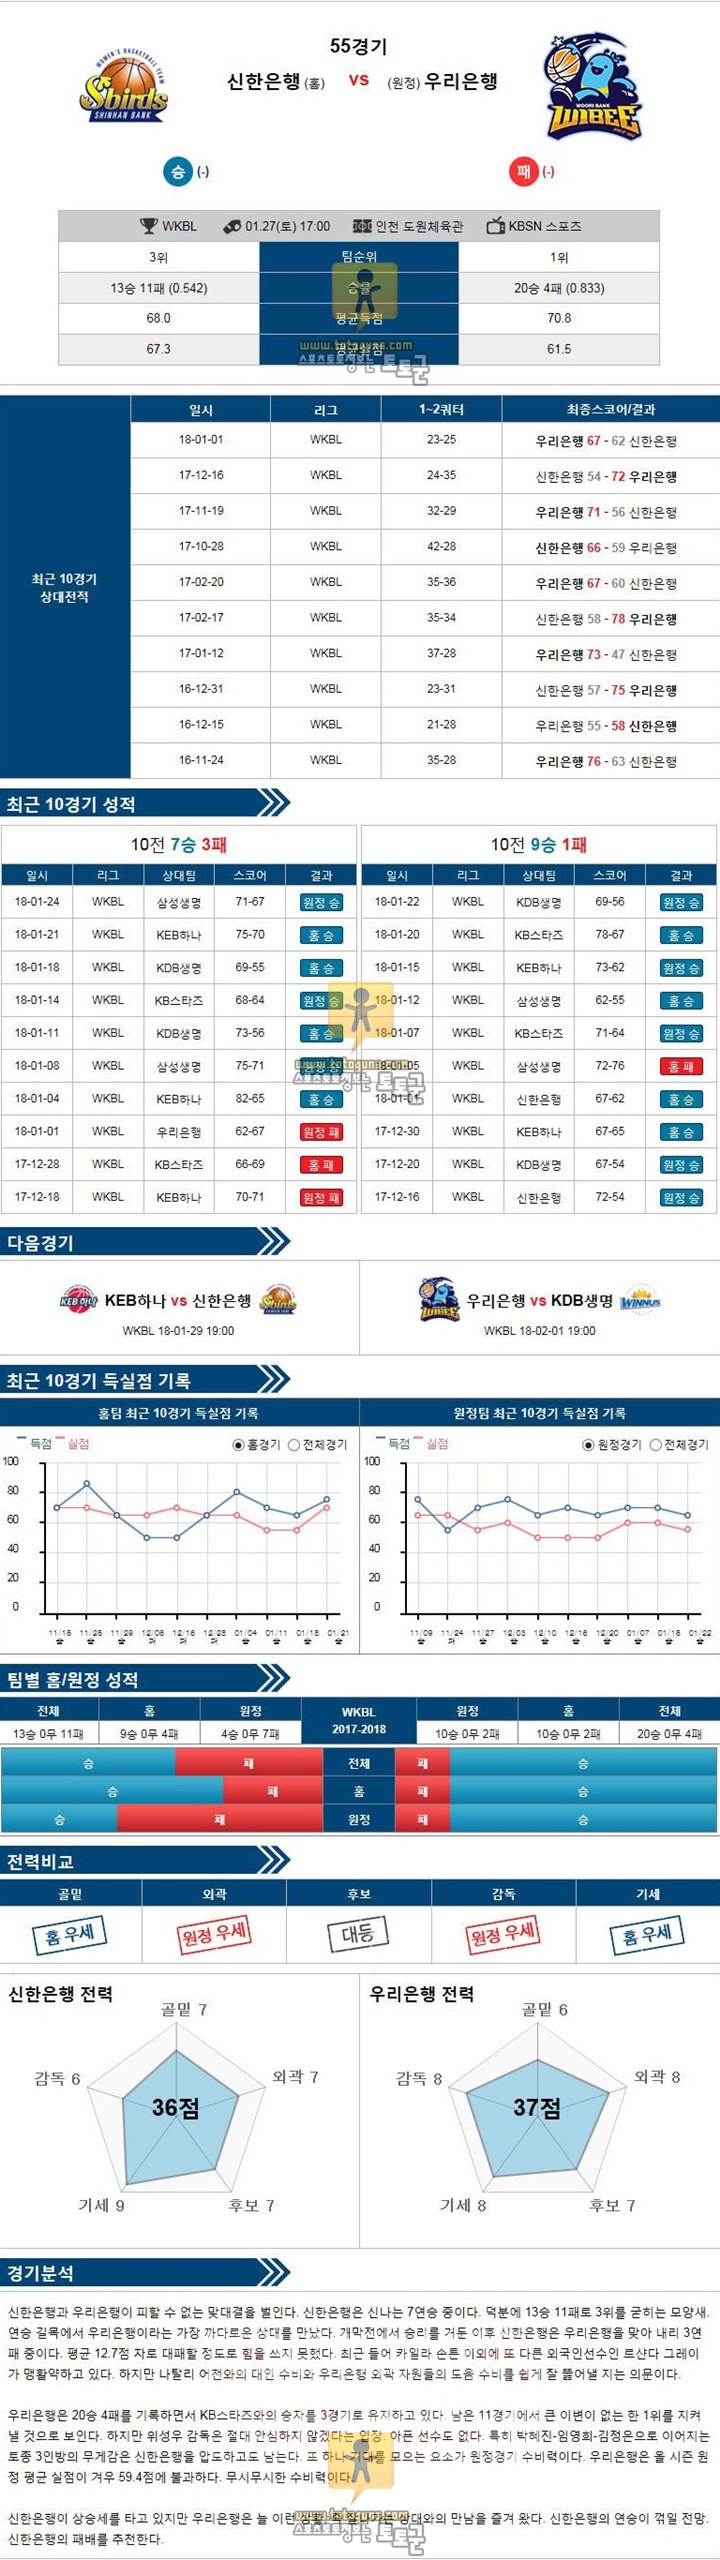 [WKBL] 1월 27일 17:00 여자농구분석 신한은행 vs 우리은행